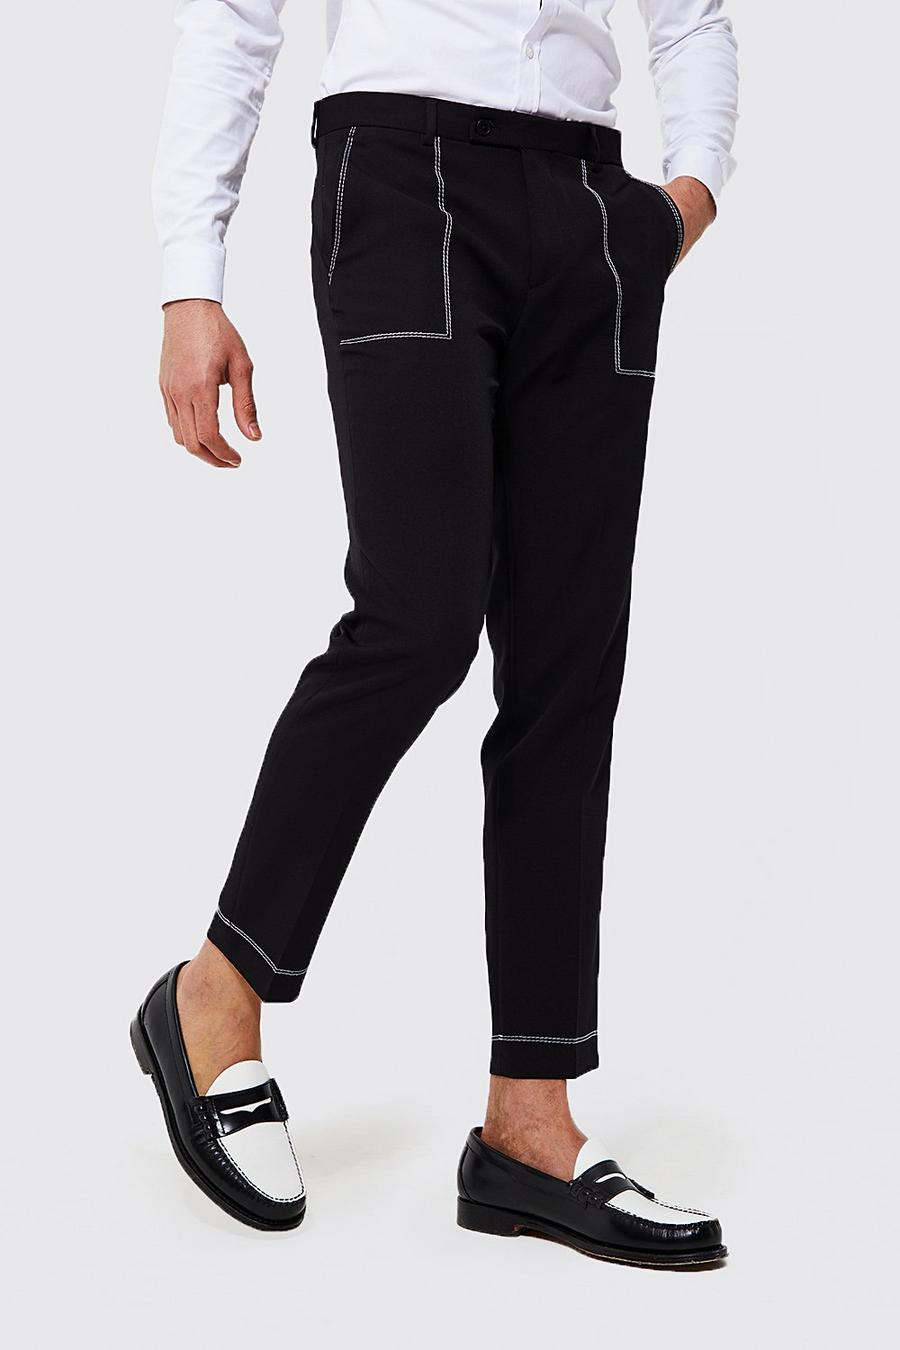 Pantaloni completo Slim Fit con cuciture a contrasto, Black